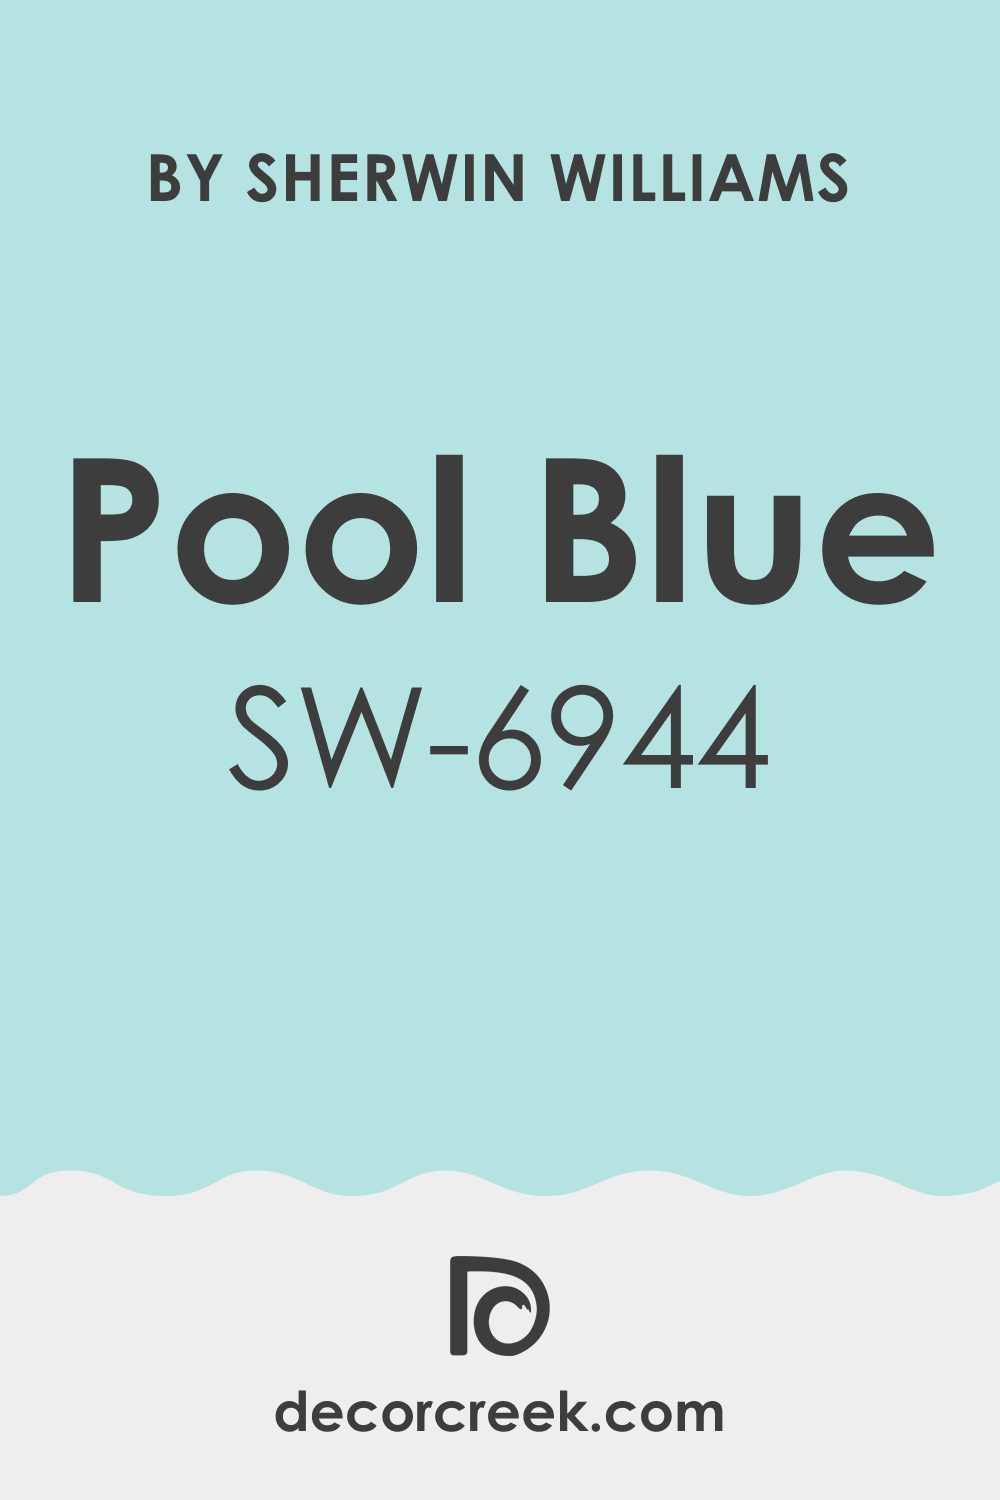 sherwin williams pool blue